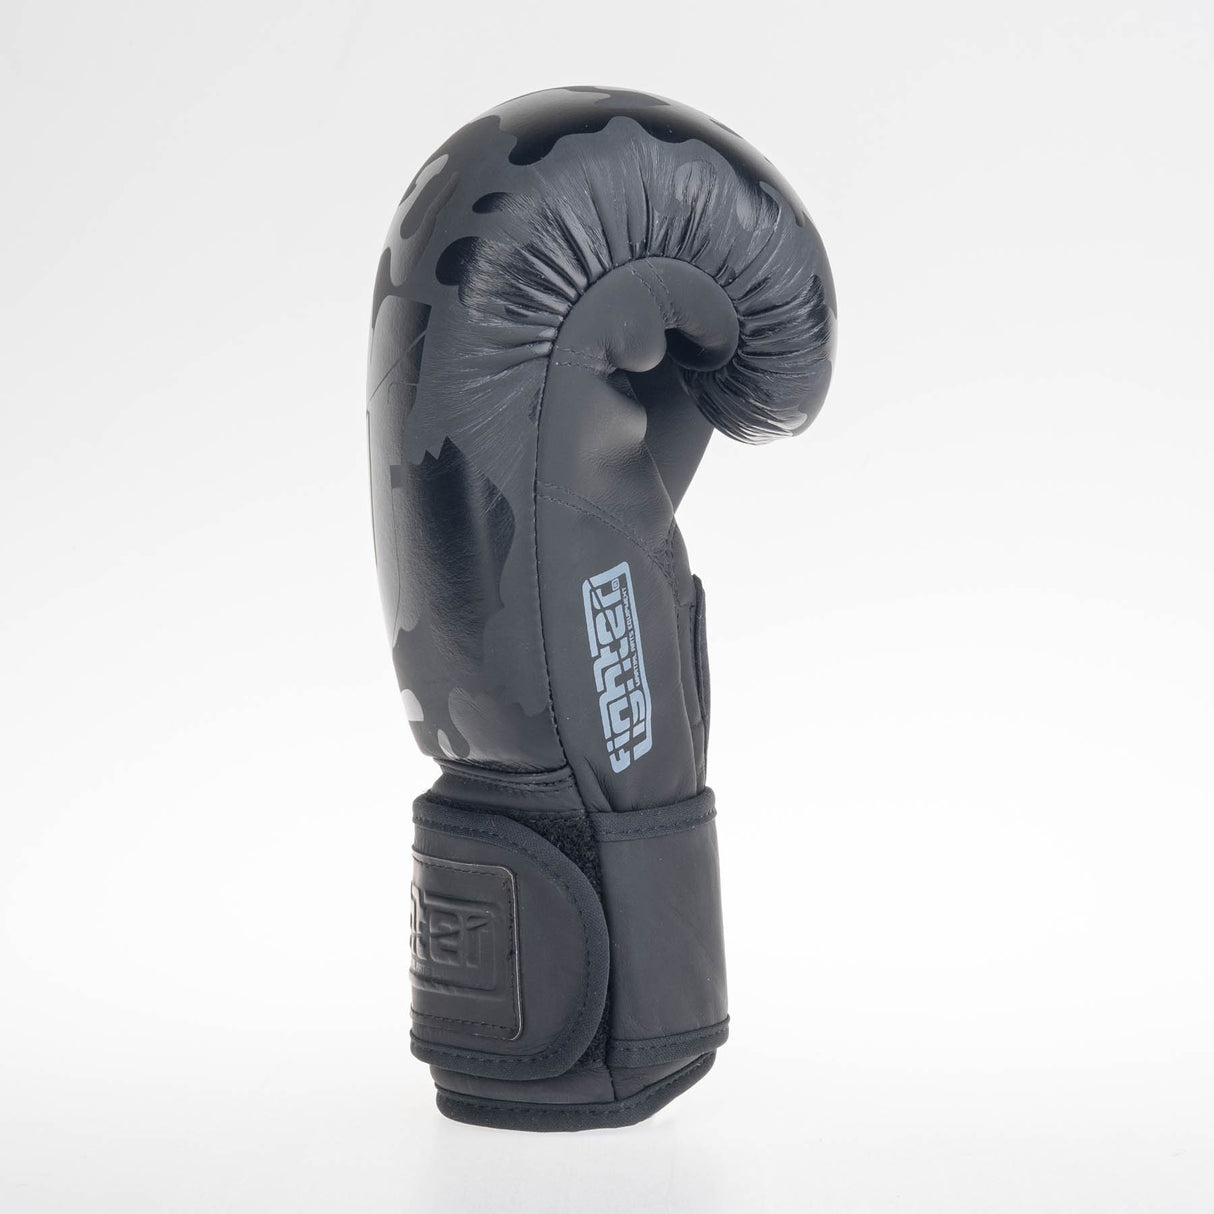 Fighter Boxing Gloves SIAM - black camo, FBG-003CBK